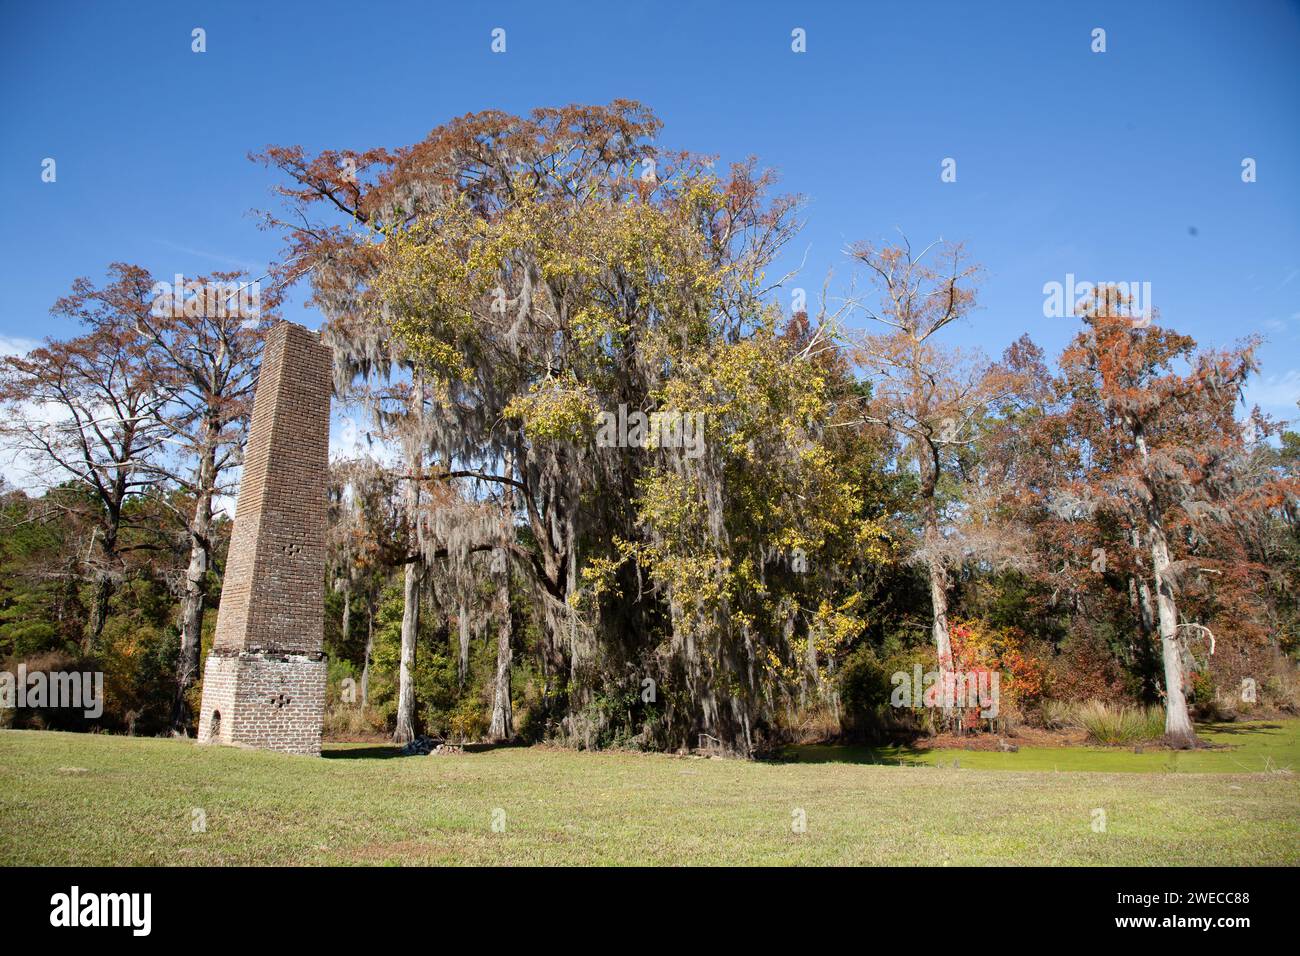 Magnifique paysage naturel dans une plantation en Caroline du Sud avec des arbres de chêne et de cyprès et Swamp Water Rice Mill Chimney Banque D'Images